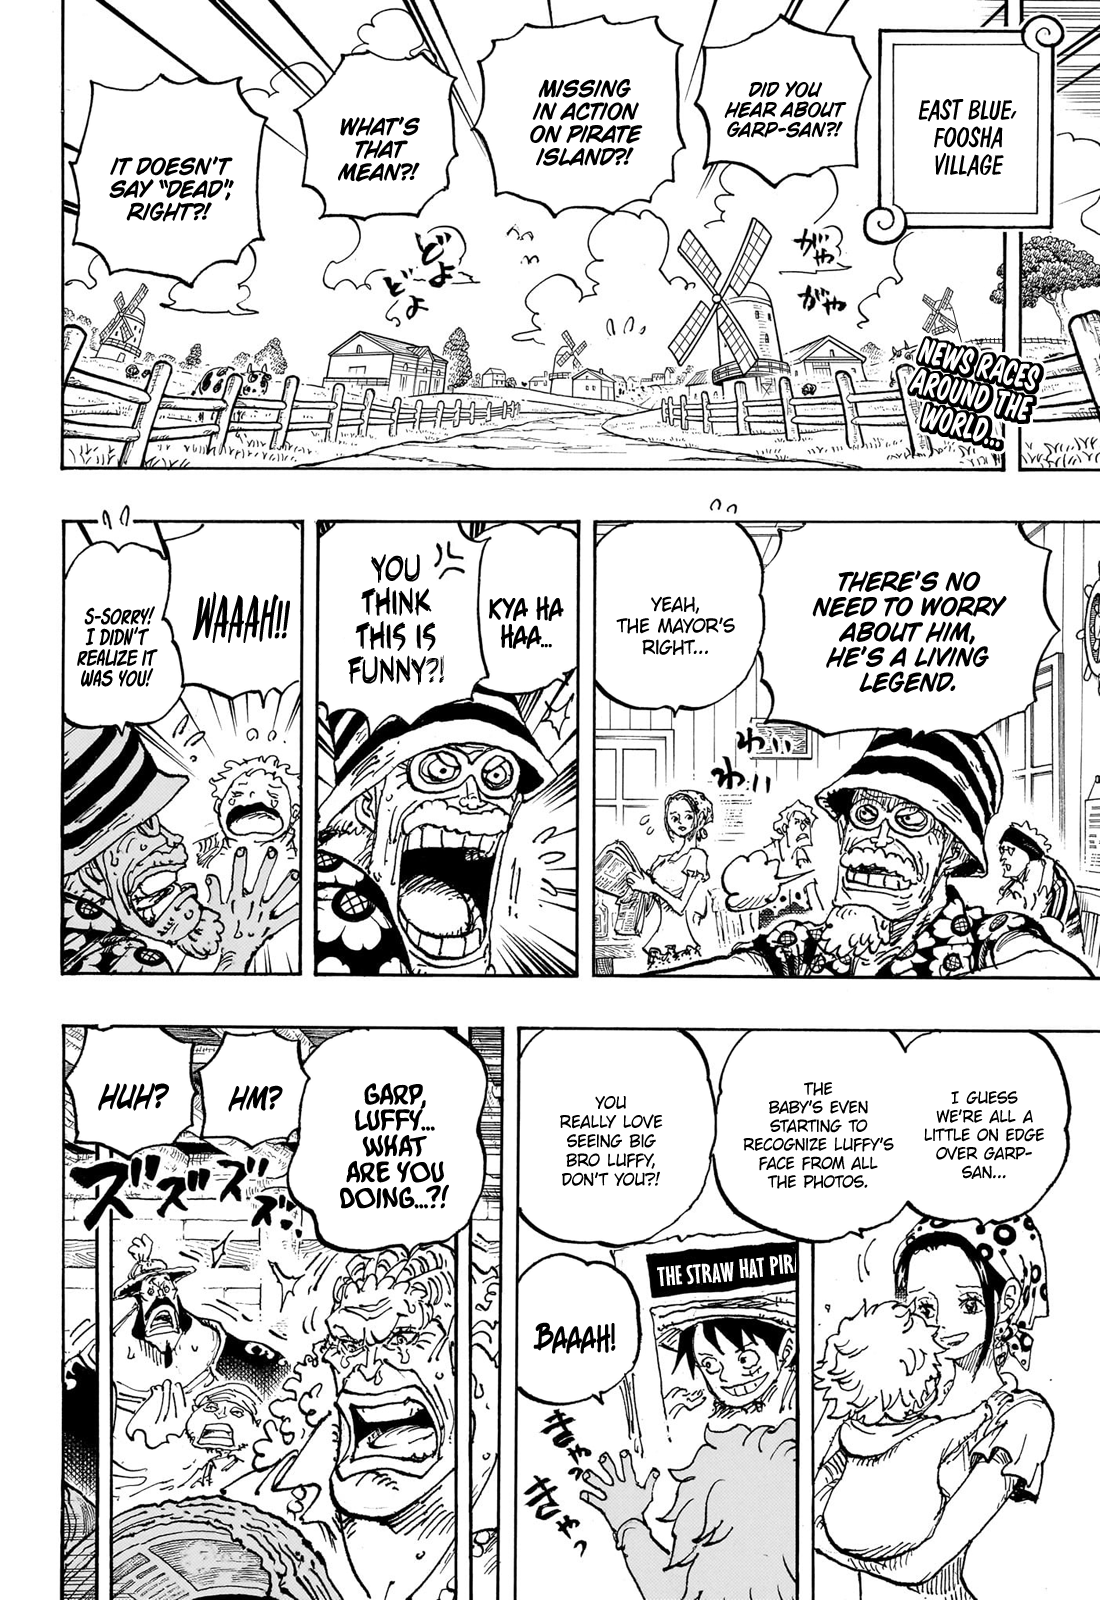 One Piece Chapter 1057 hints break Twitter as fans debate Yamato's